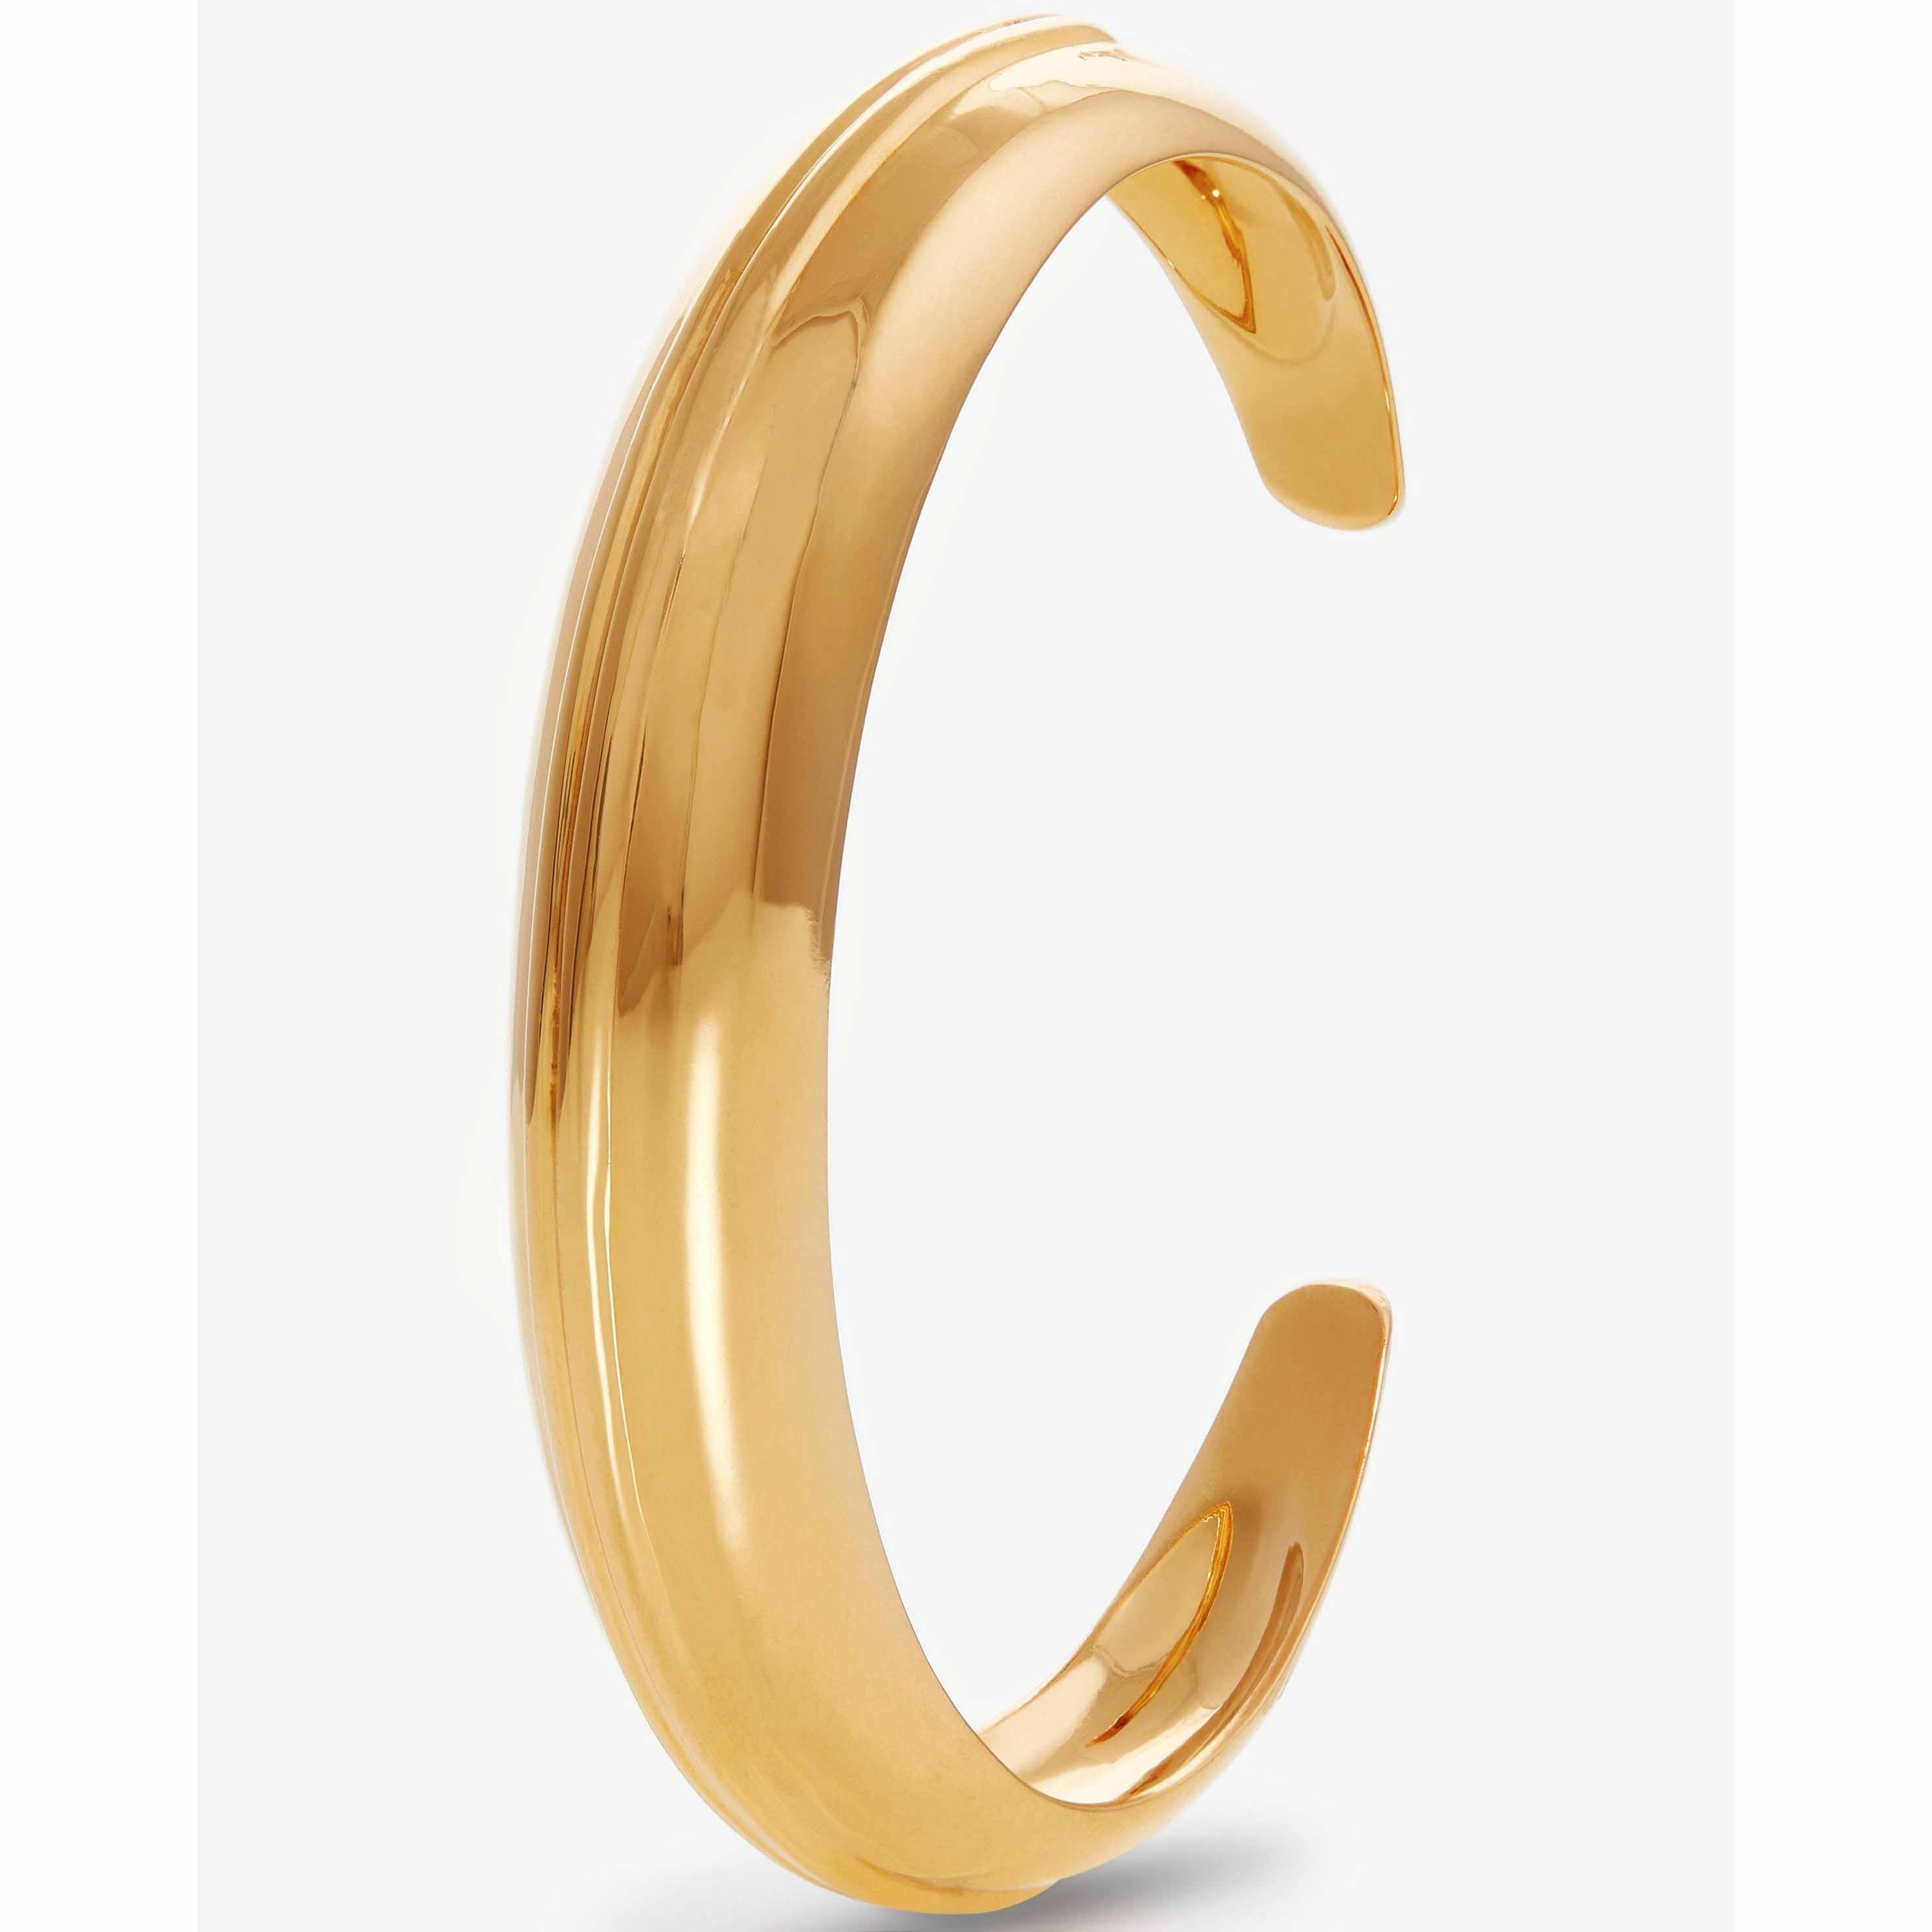 Zákaznický design rakouských šperků vyrobený otevřený prsten na základně ze sterlingového stříbra a pozlacený 18karátovým zlatem